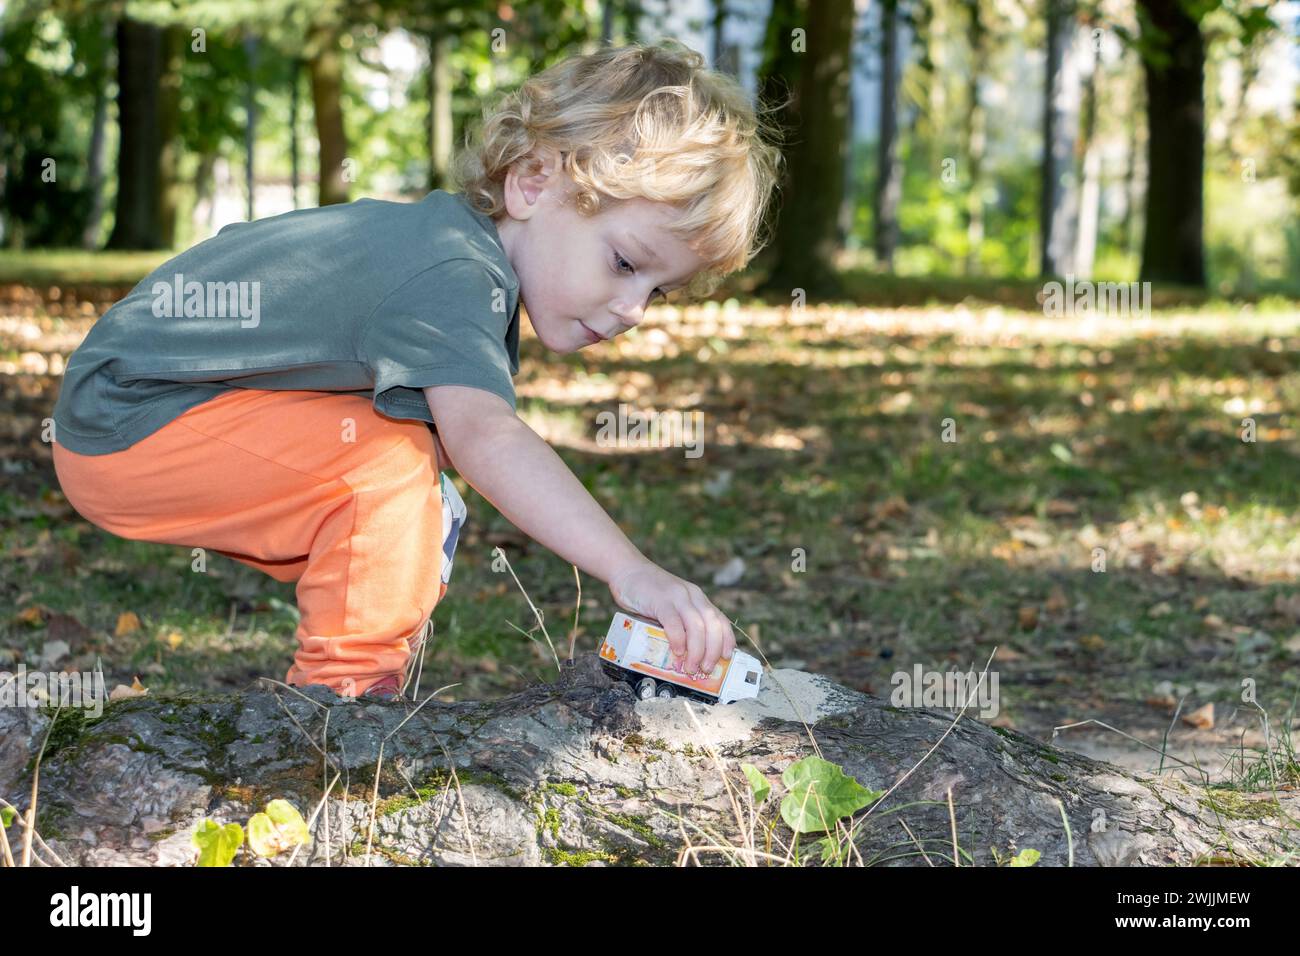 Un petit garçon joue avec un camion modèle sur le bord de la forêt Banque D'Images